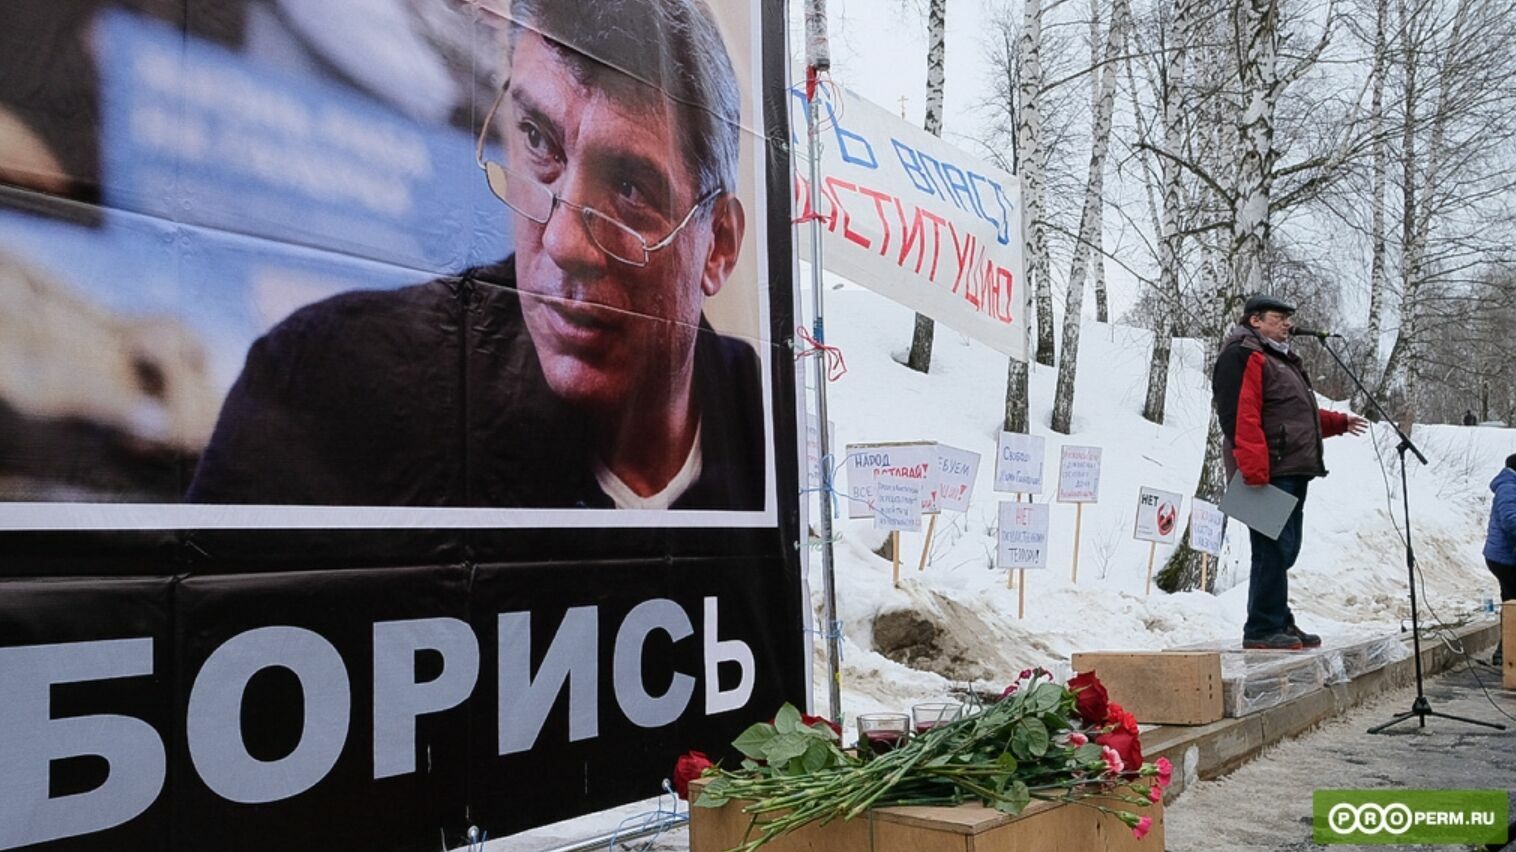 Суд признал незаконным отказ мэрии Перми в согласовании митинга памяти Бориса Немцова